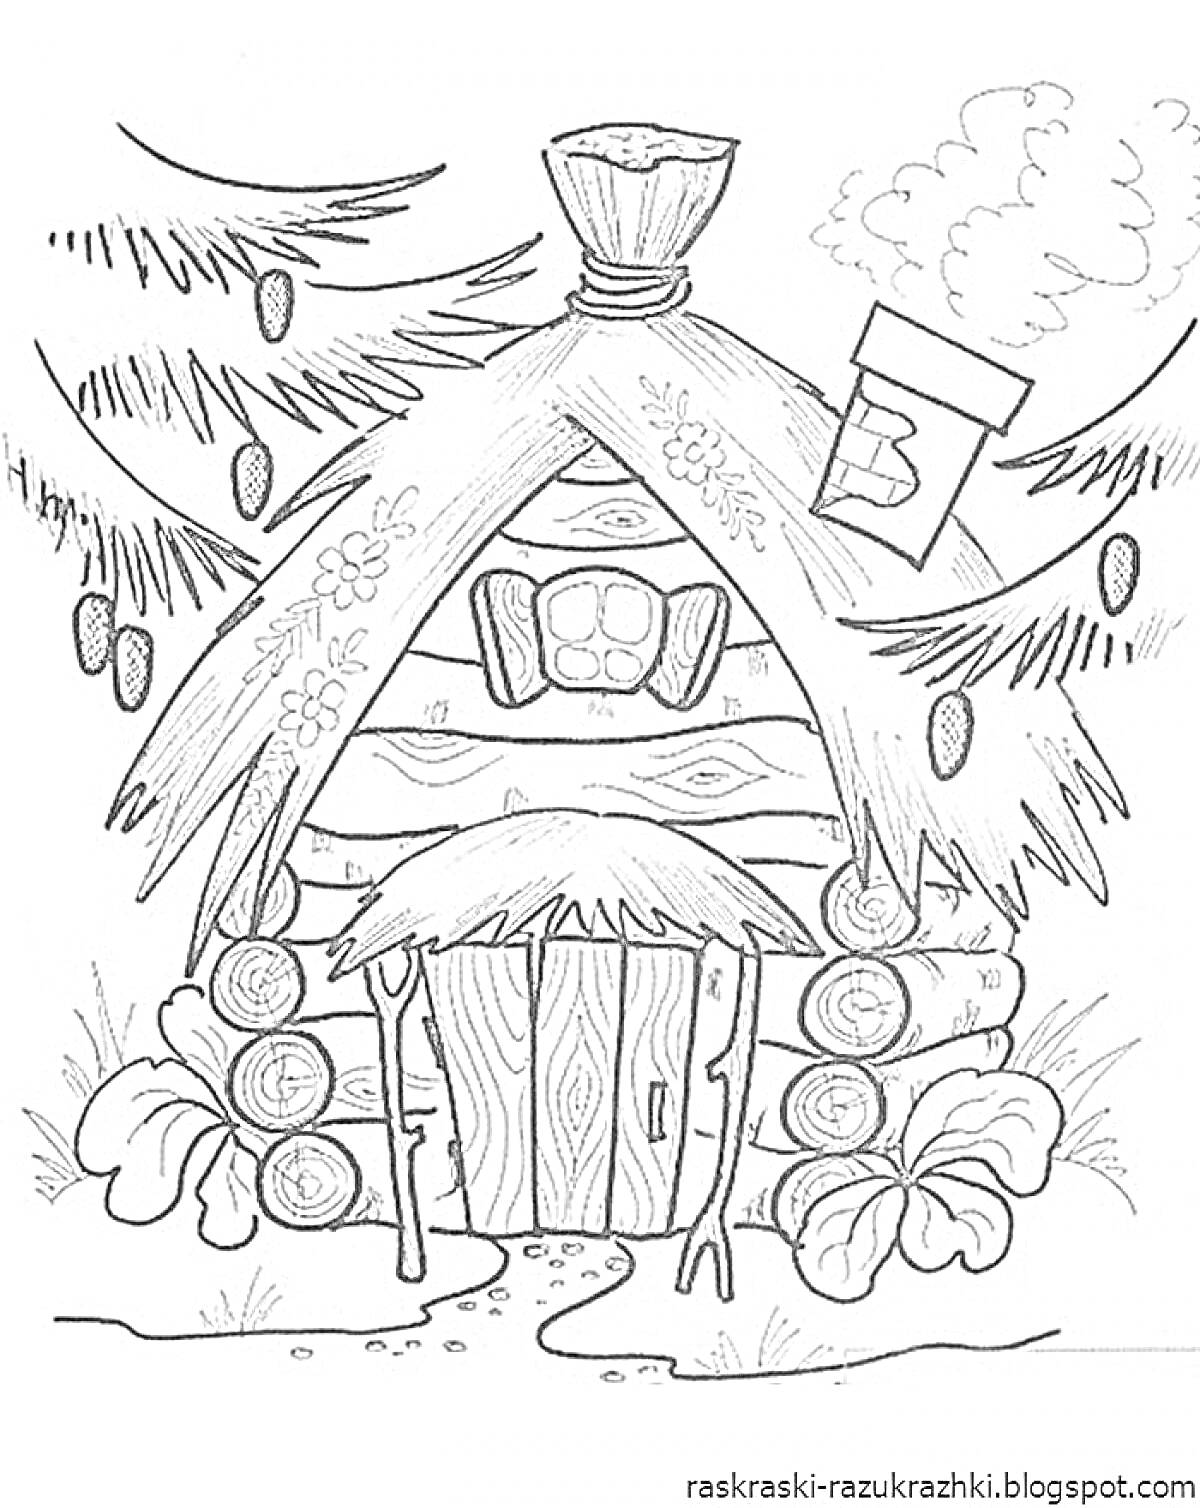 Раскраска Деревянная избушка с трубой и цветами на крыше, окруженная елями и пнями